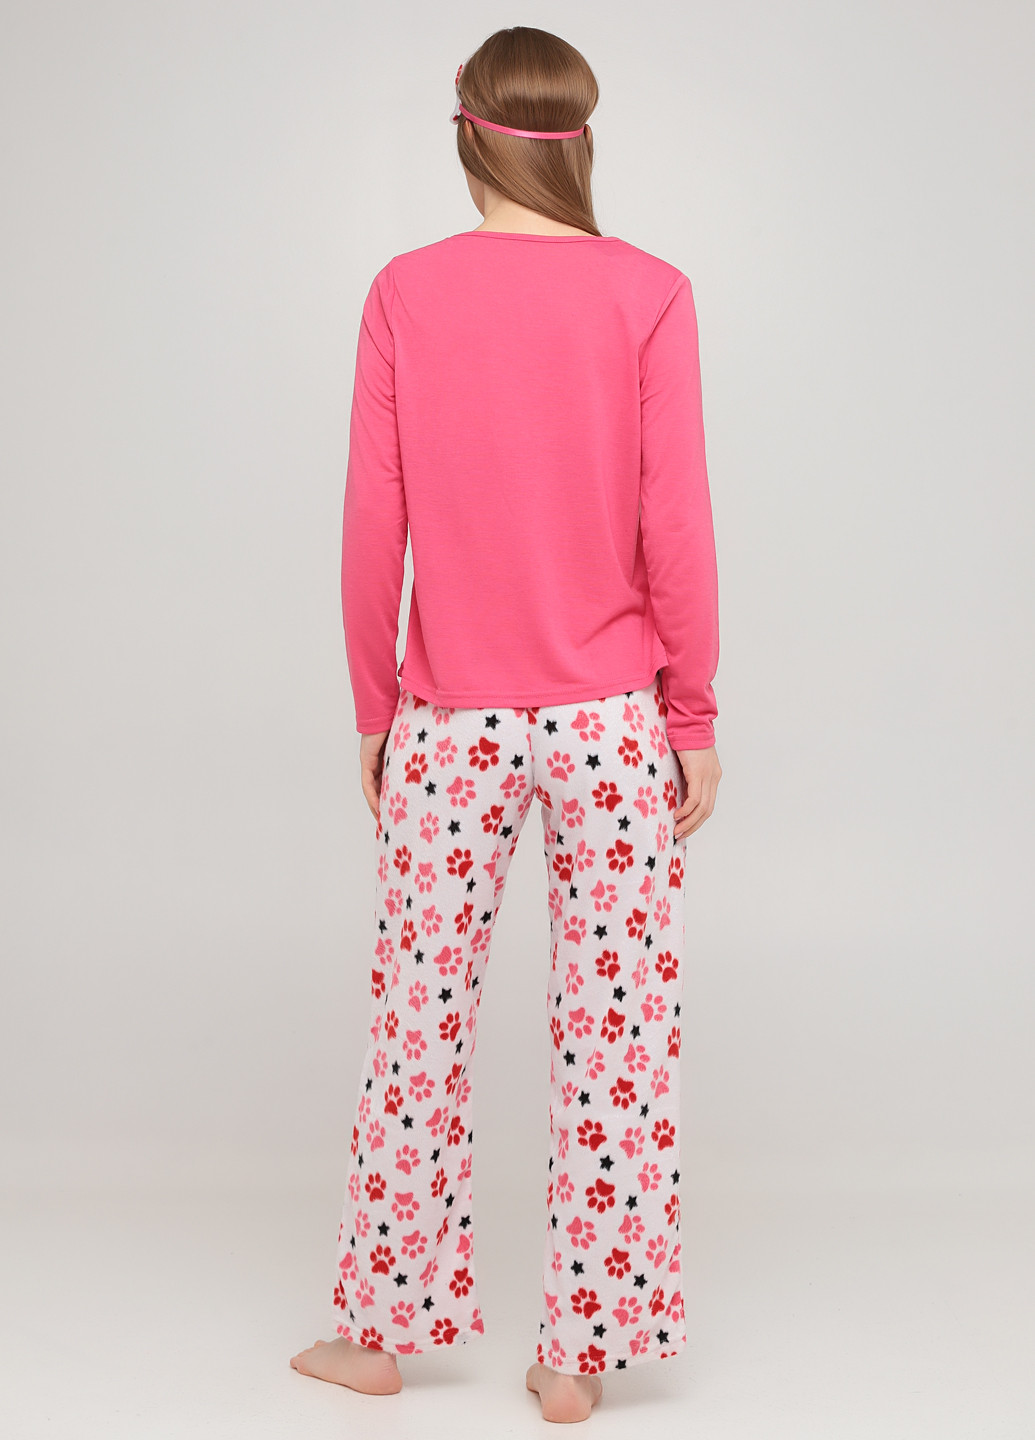 Розовая всесезон пижама (лонгслив, брюки, маска для сна) лонгслив + брюки Studio